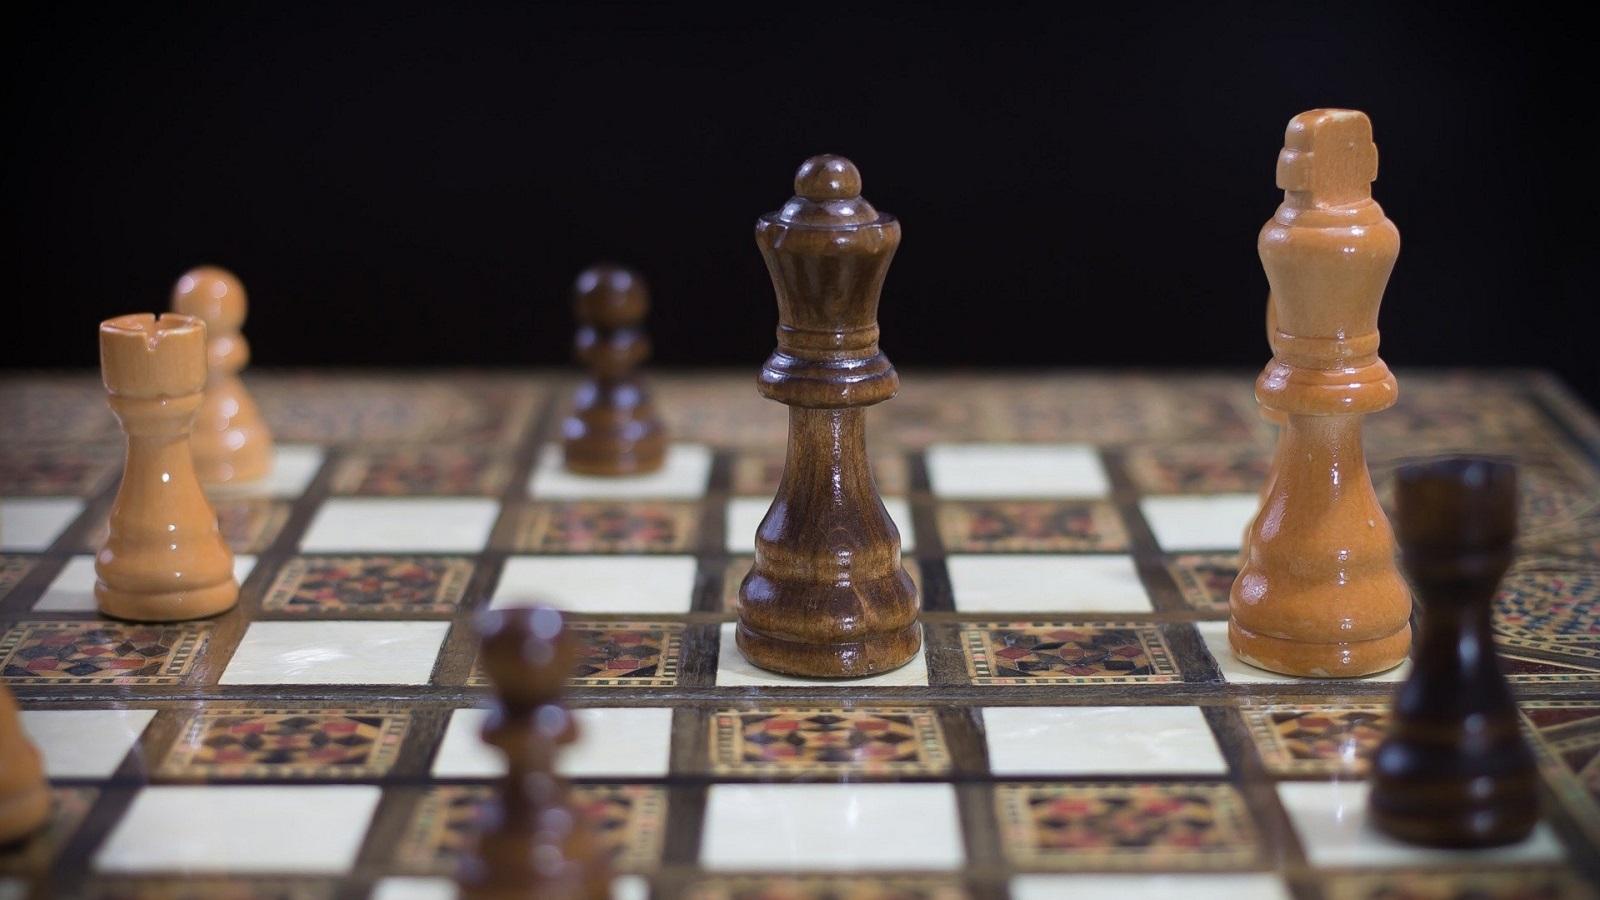 Aprender ajedrez online: ventajas y dónde hacerlo